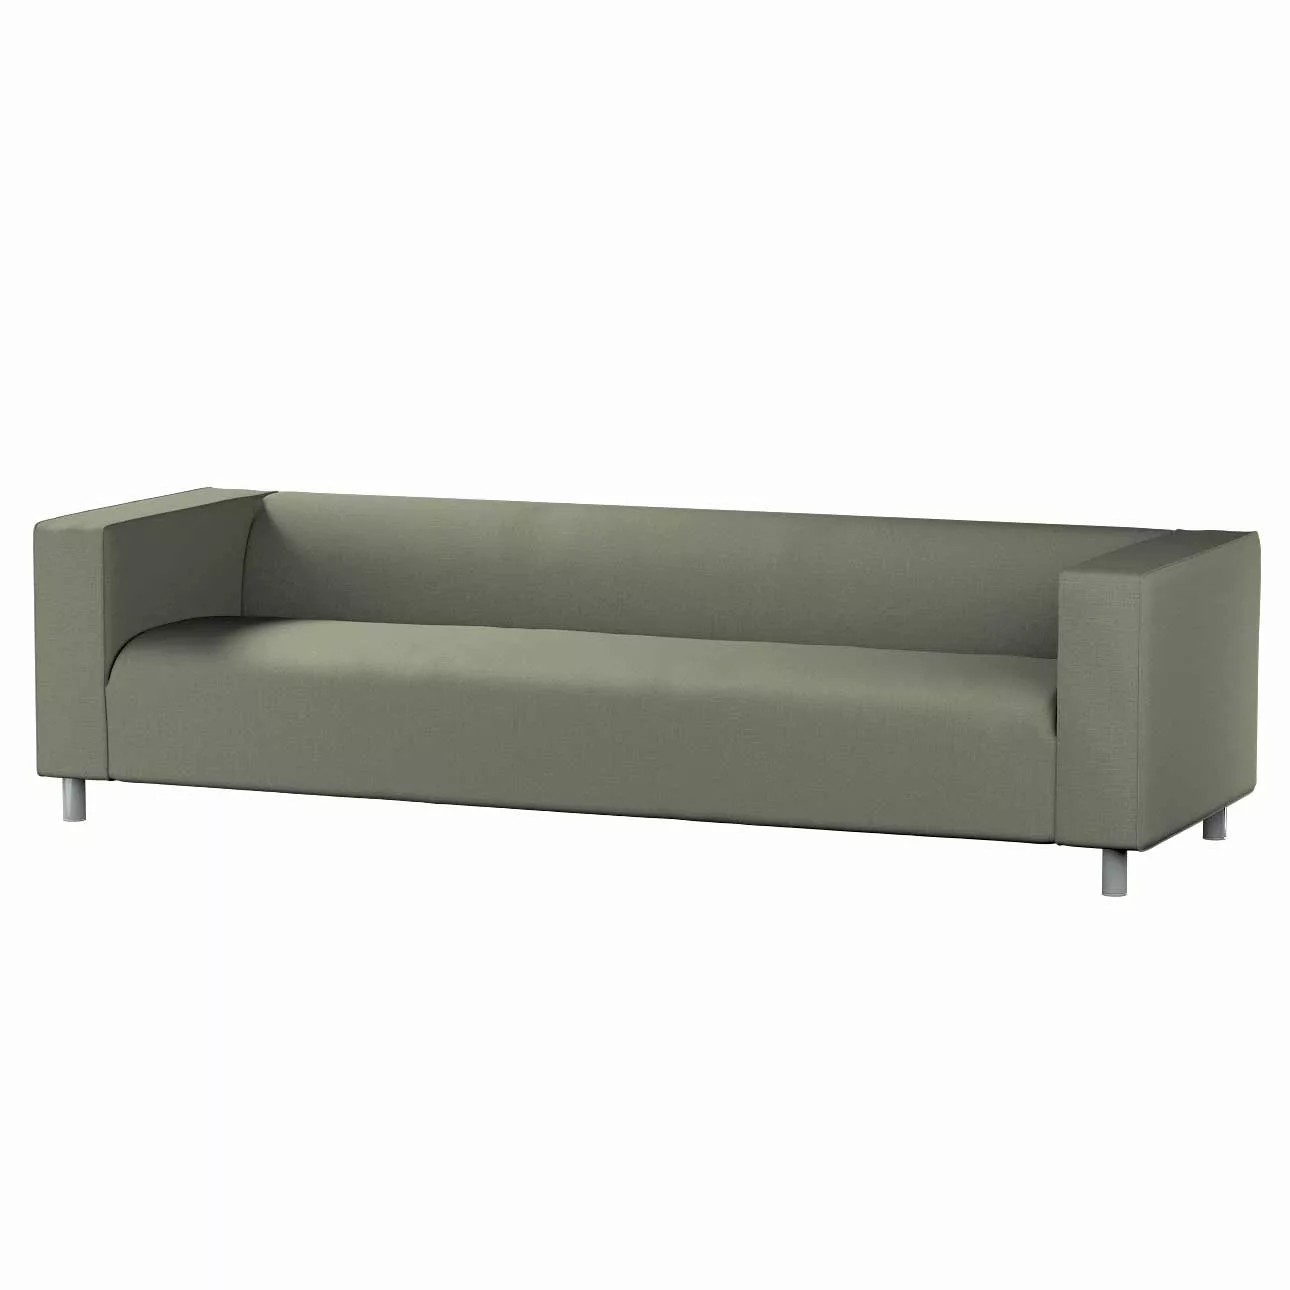 Bezug für Klippan 4-Sitzer Sofa, khaki, Bezug für Klippan 4-Sitzer, Living günstig online kaufen